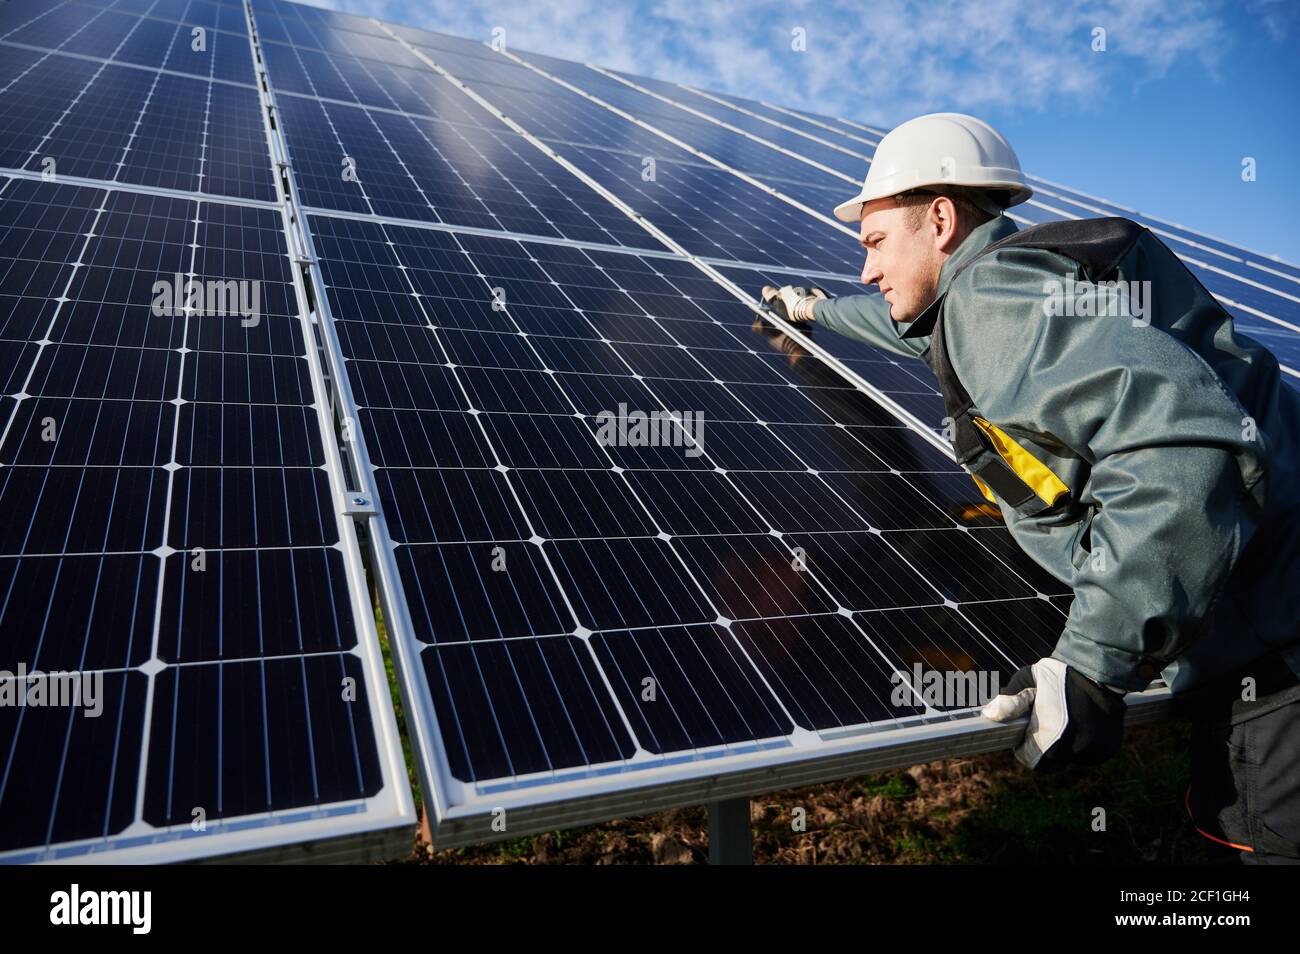 Professionelle Arbeiter, tragen Schutzanzug, Helm und Handschuhe, Installation einer Photovoltaik-Solarbatterien an einem sonnigen Tag. Konzept der alternativen Energie und Energie nachhaltige Ressourcen. Stockfoto